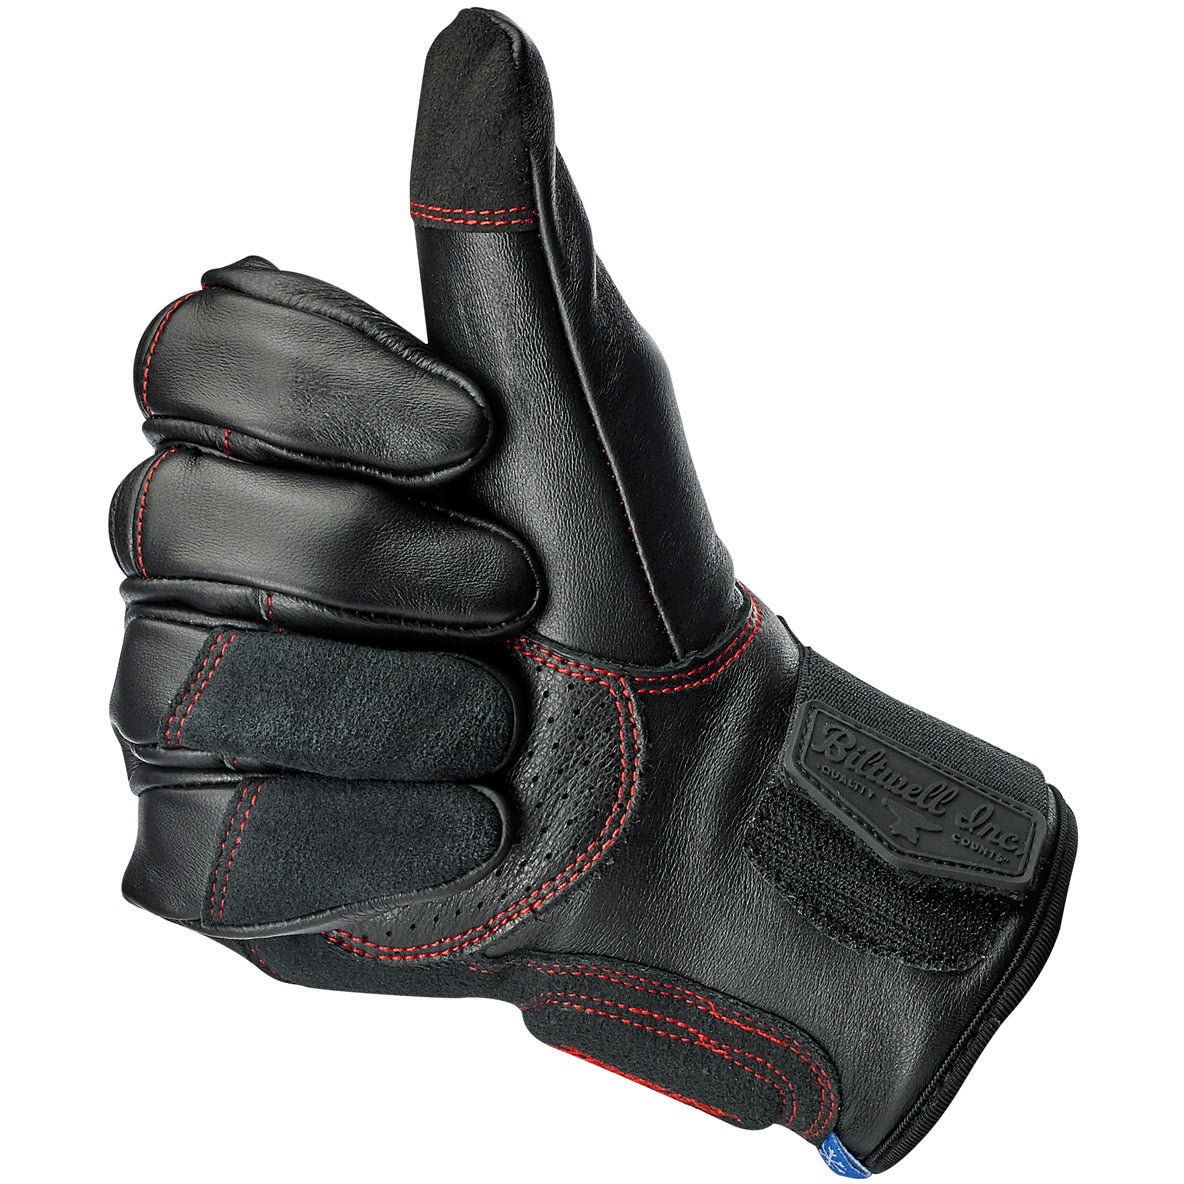 Belden Gloves - Redline